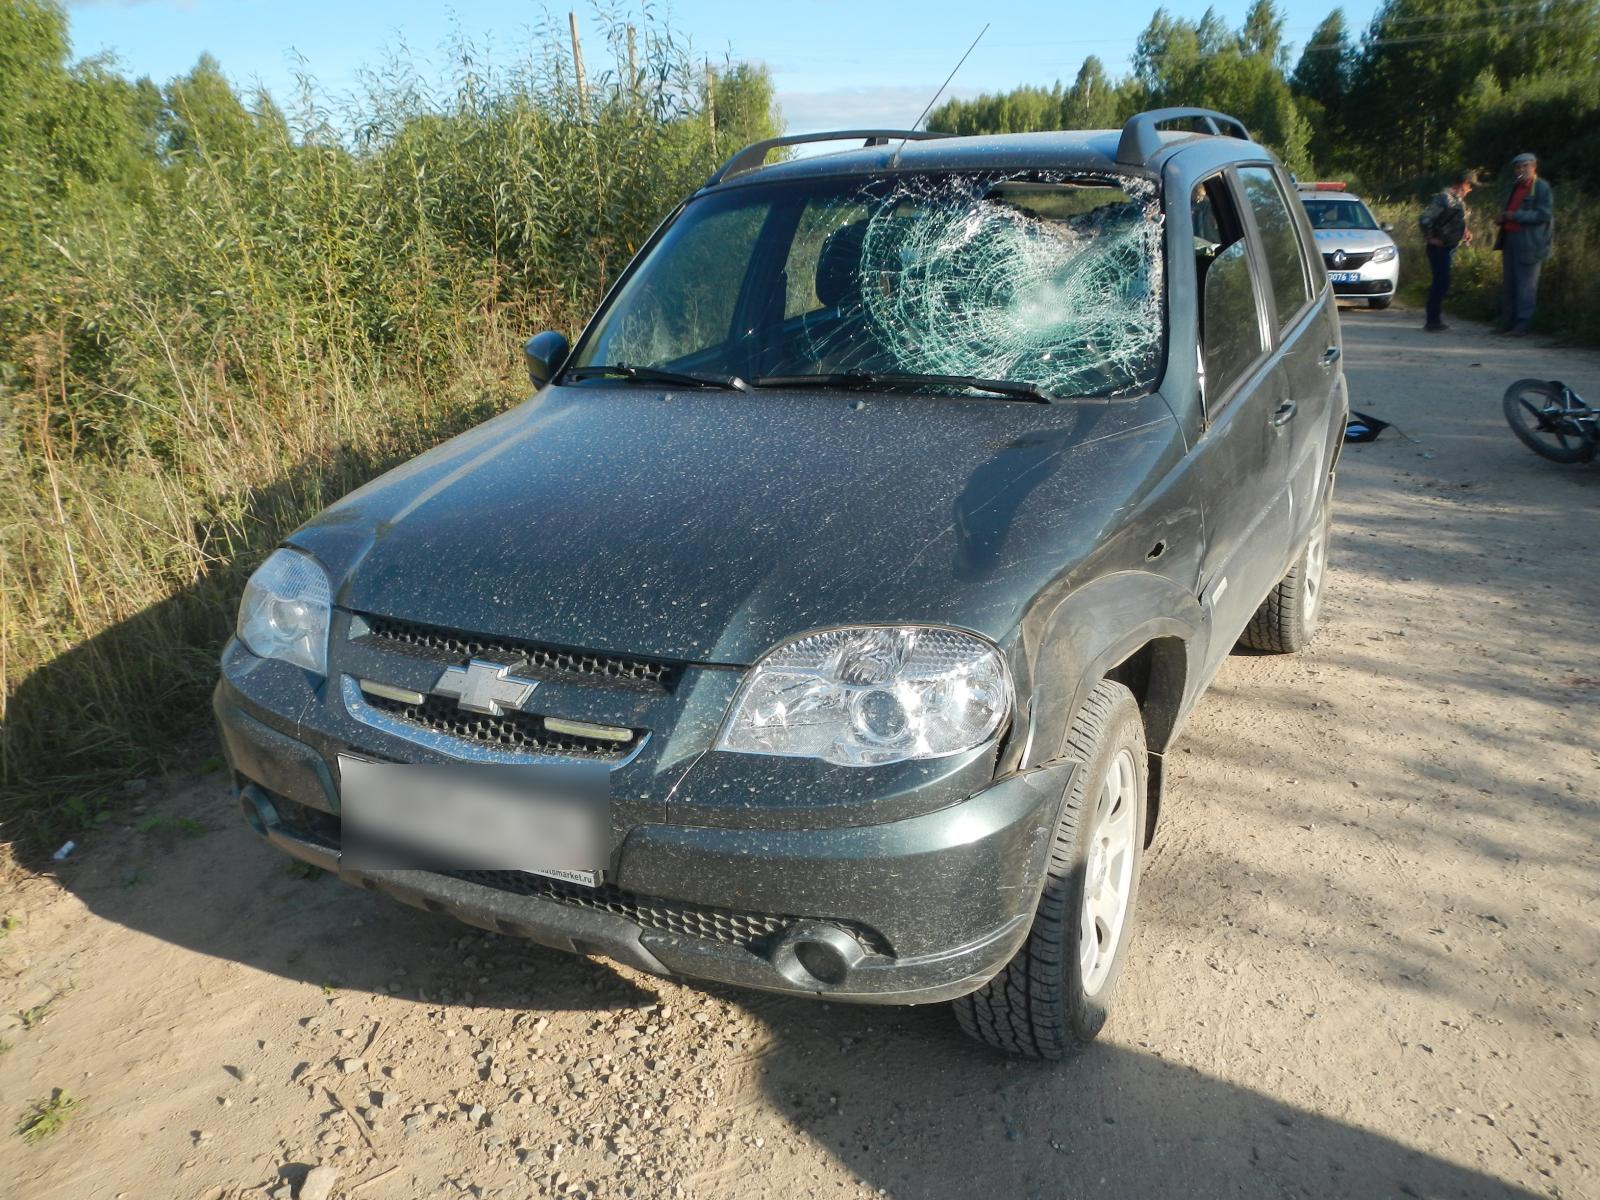 Пятеро детей пострадали в ДТП на костромских дорогах только за минувшее воскресенье